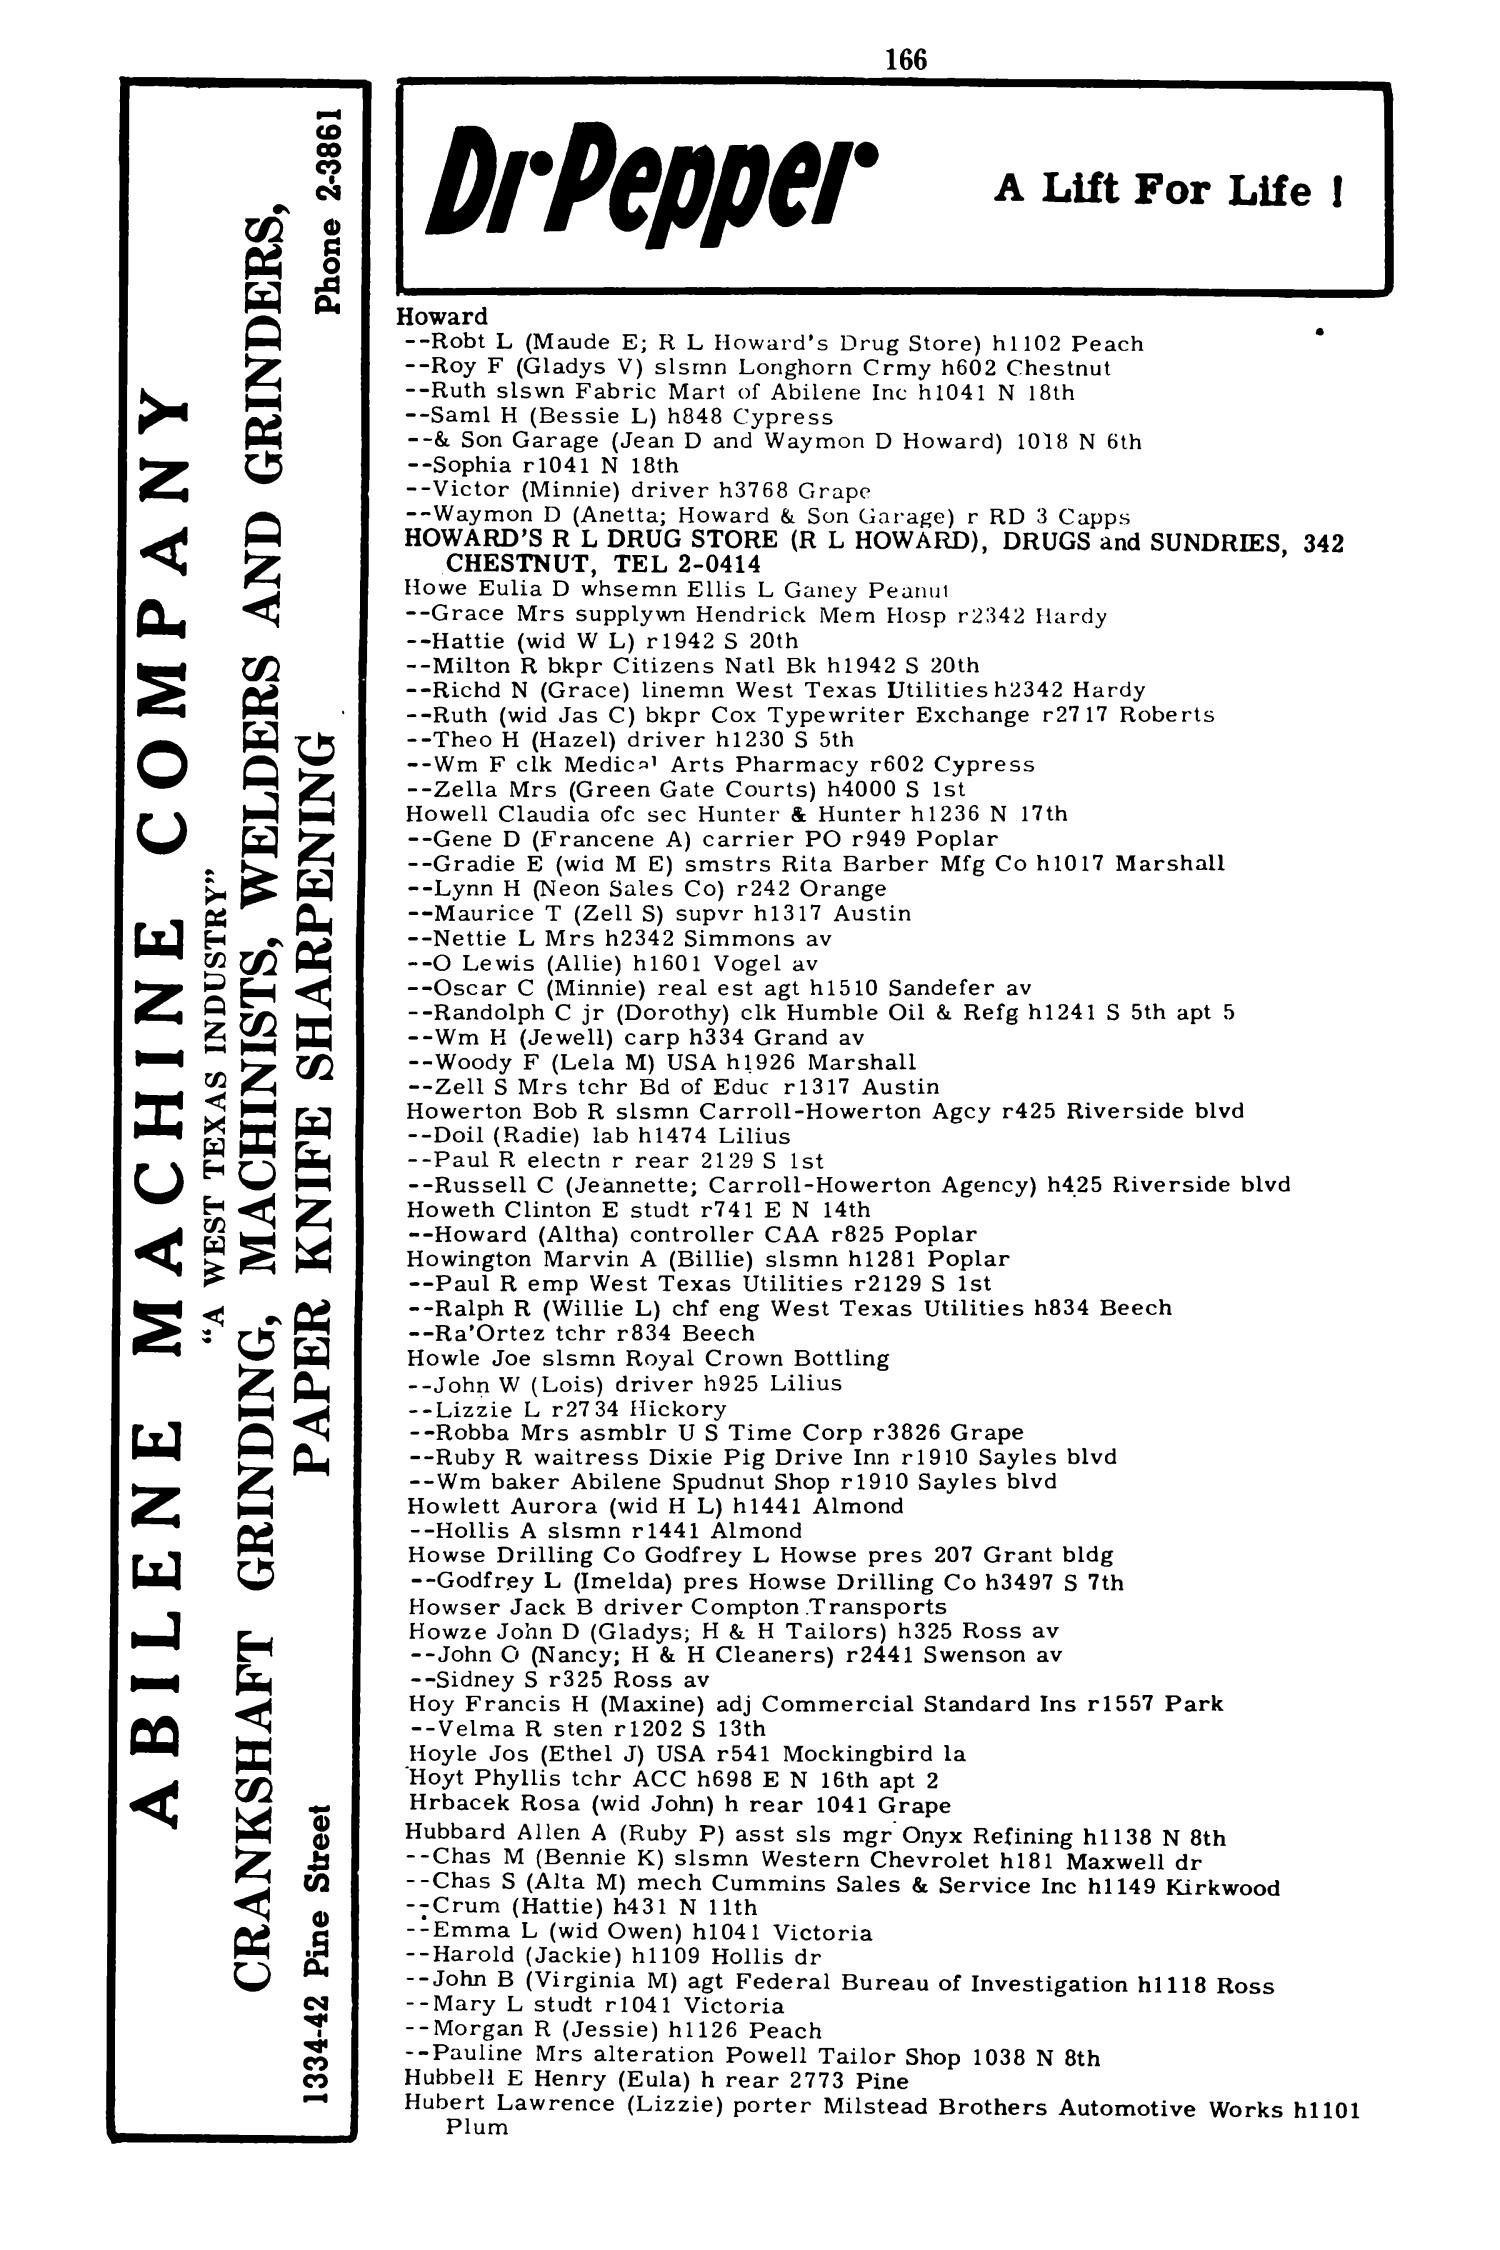 Worley's Abilene (Taylor County, Texas) City Directory, 1951
                                                
                                                    166
                                                